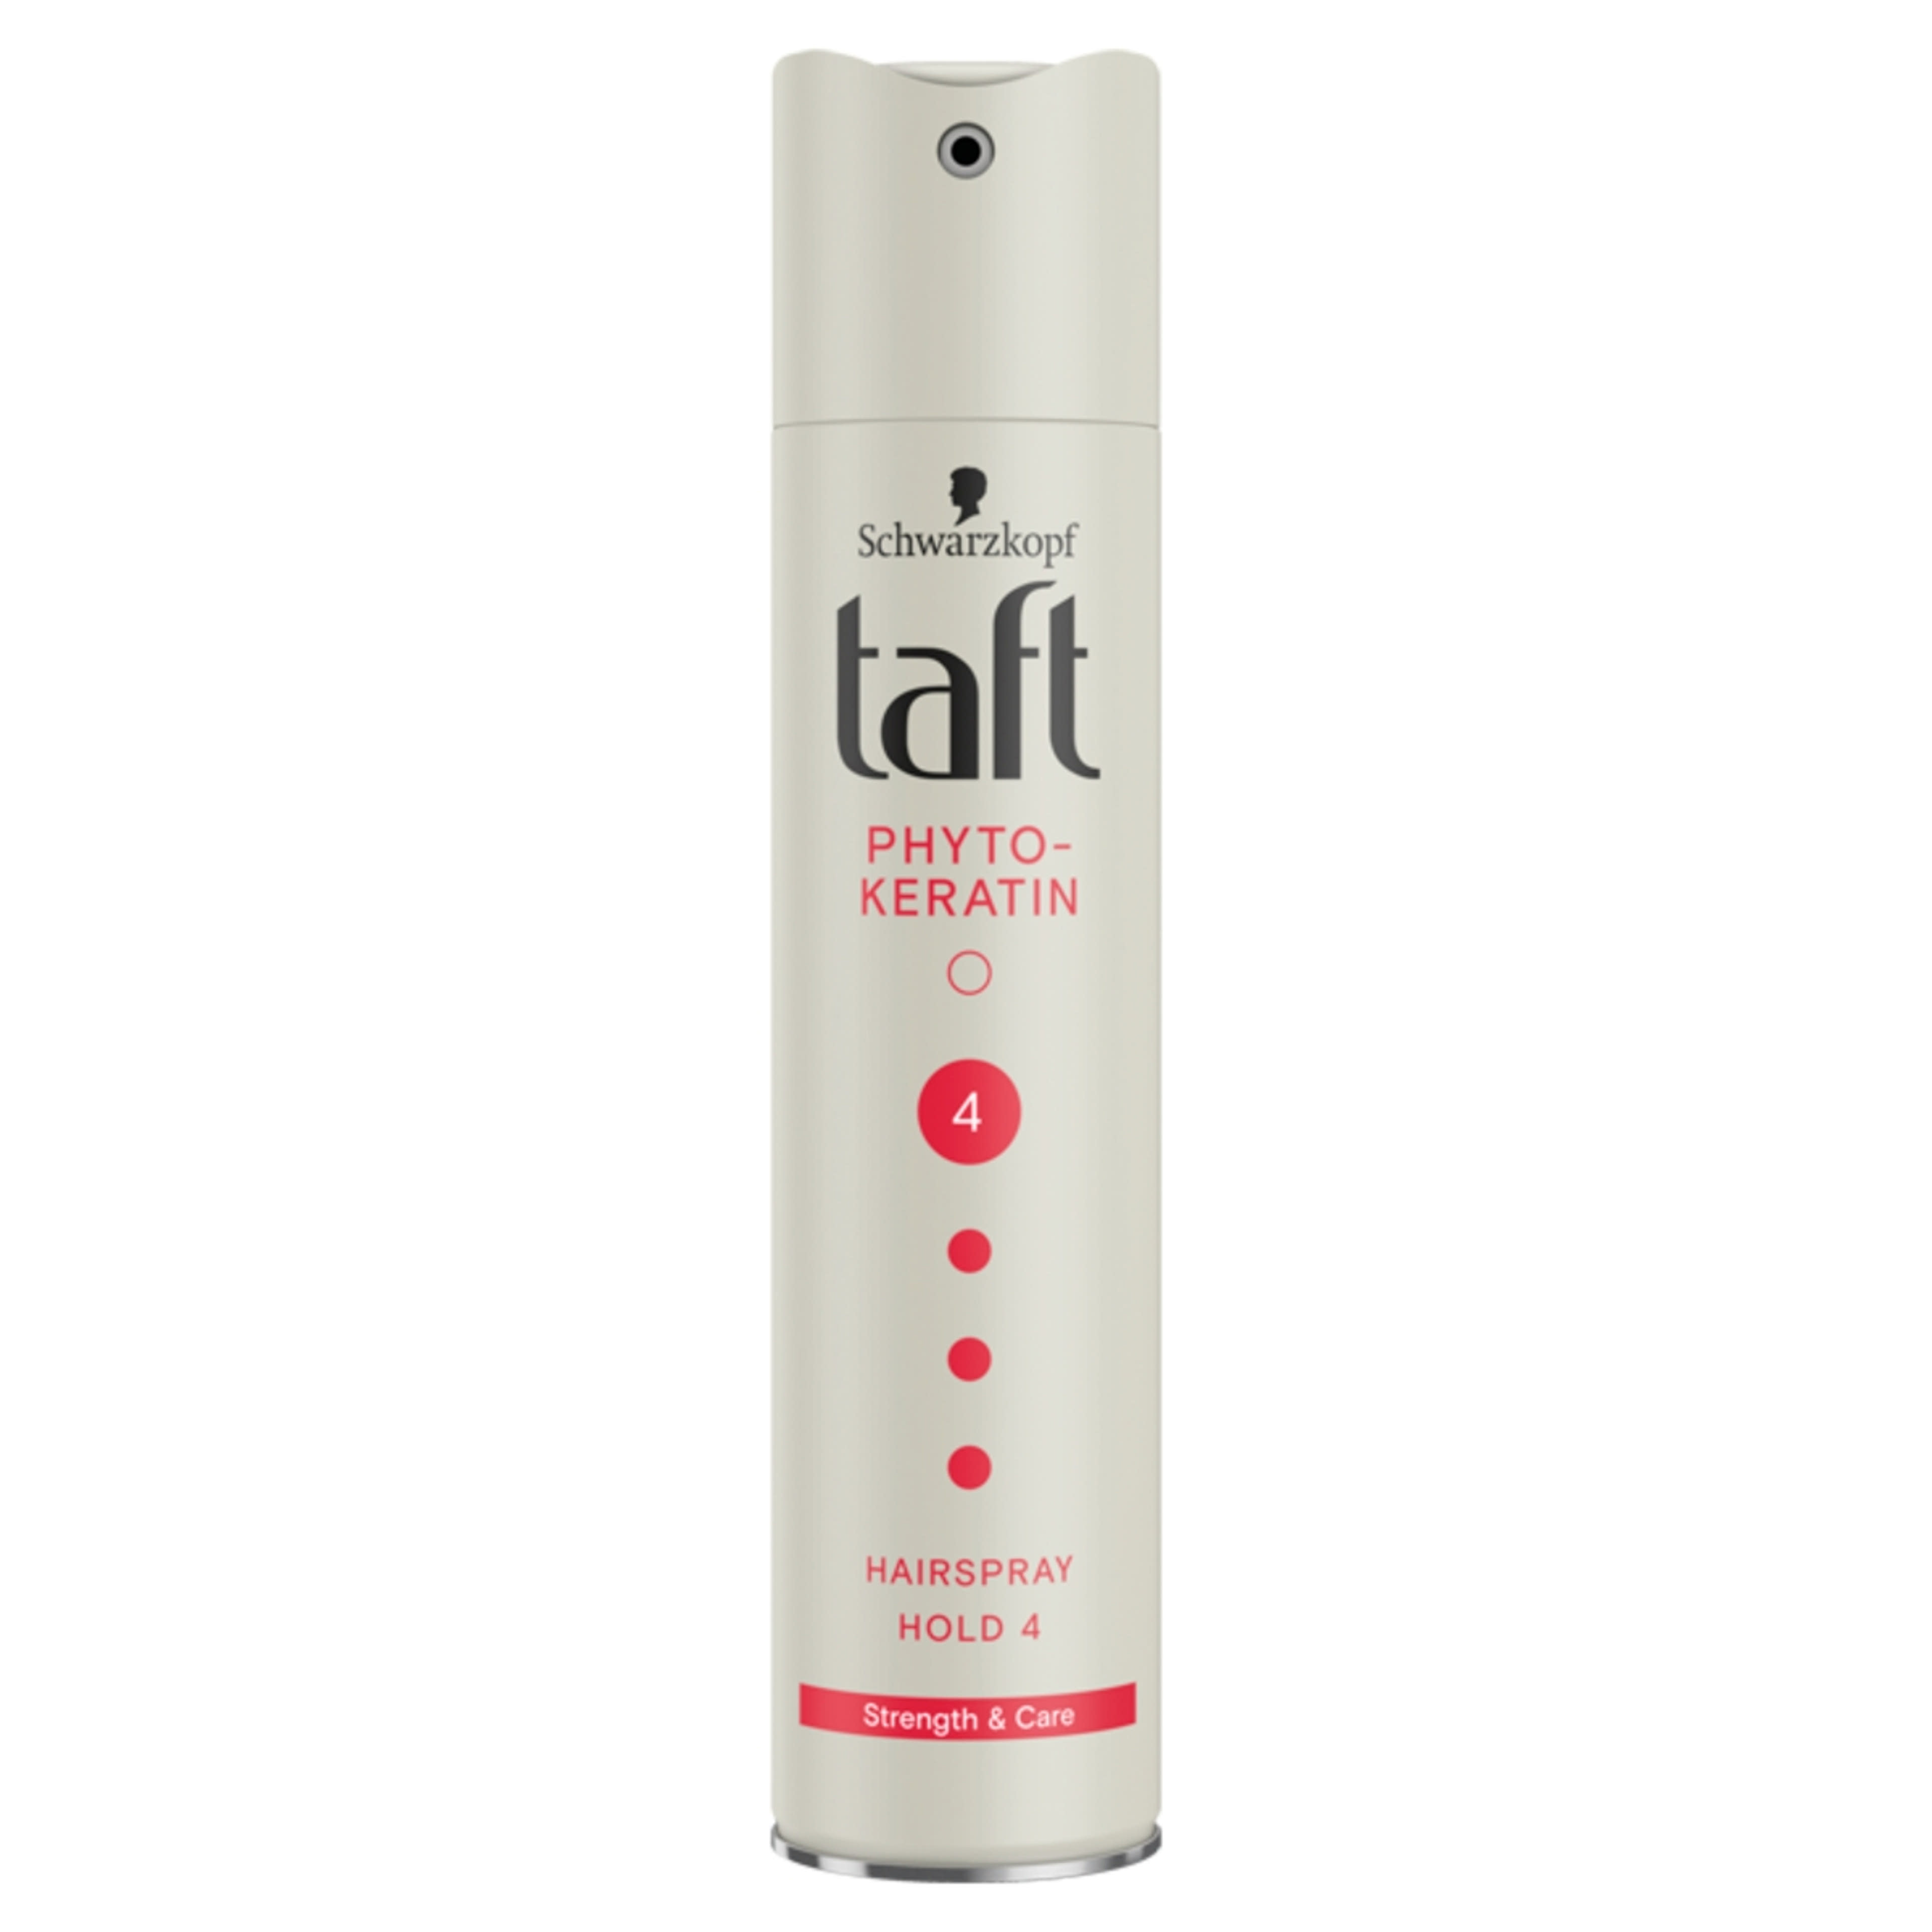 Taft Complete Keratinos Energizáló Ultra Erős hajlakk - 250 ml